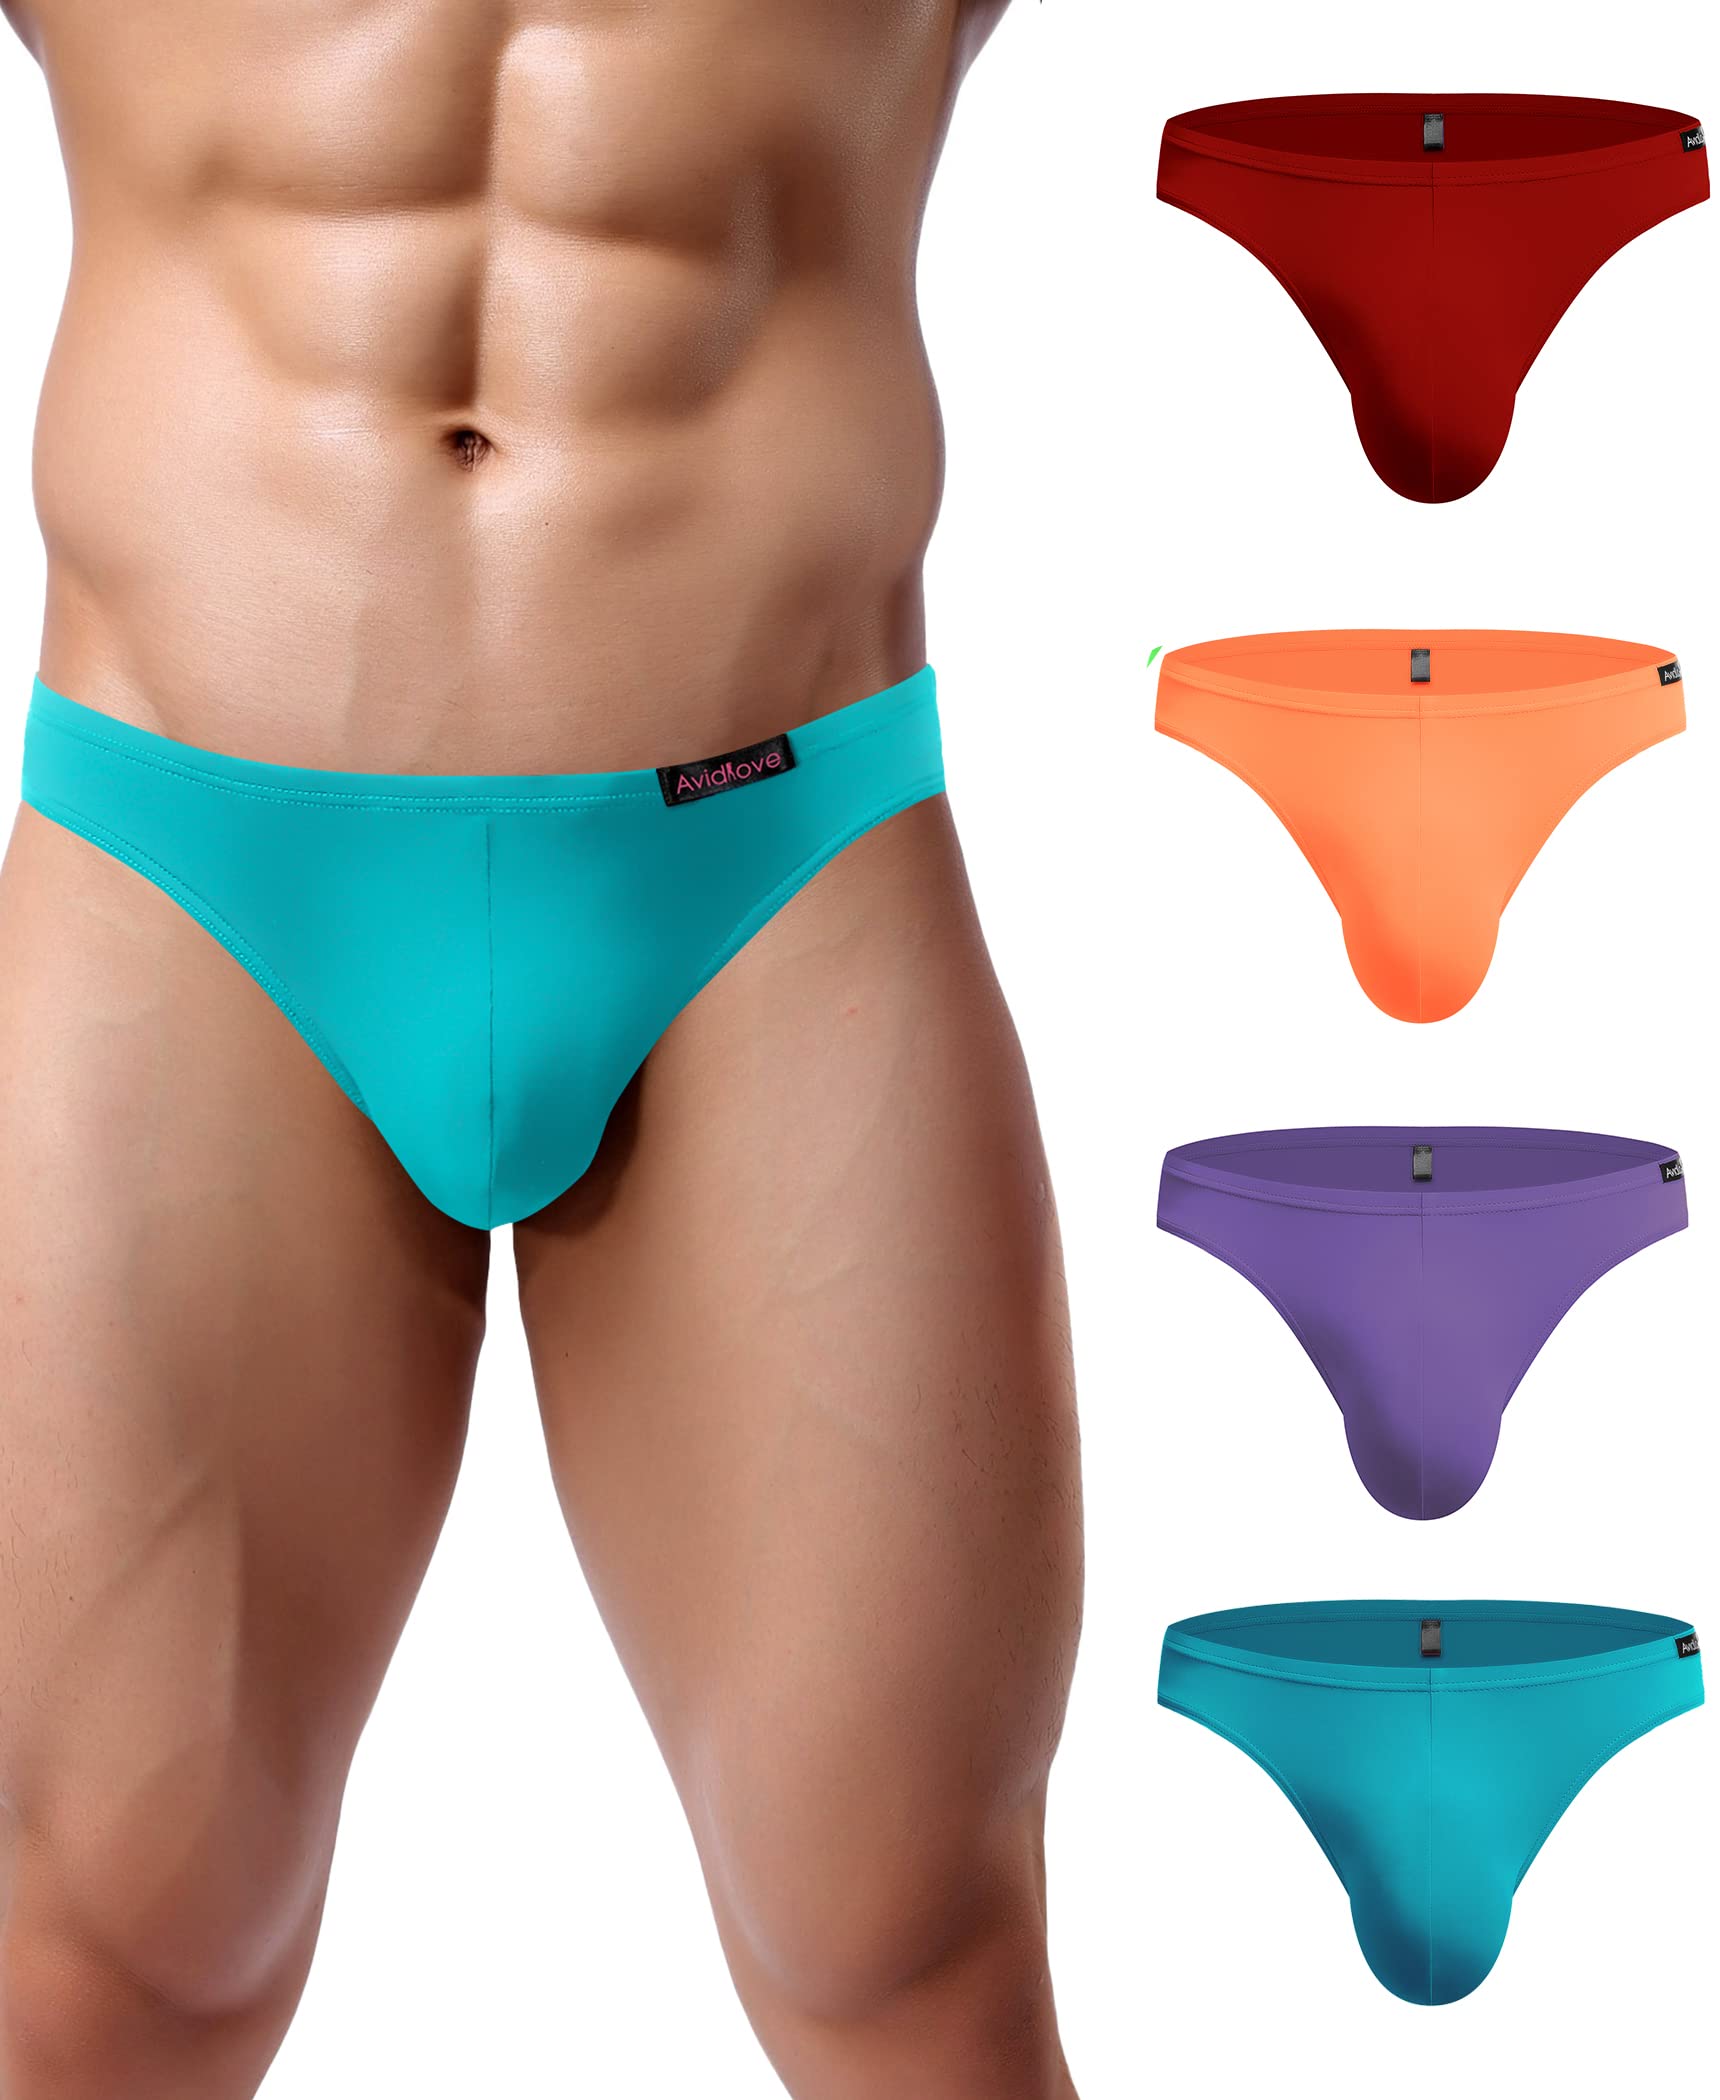 Buy AvidloveMens Bikini Underwear Low Rise Briefs Microfiber